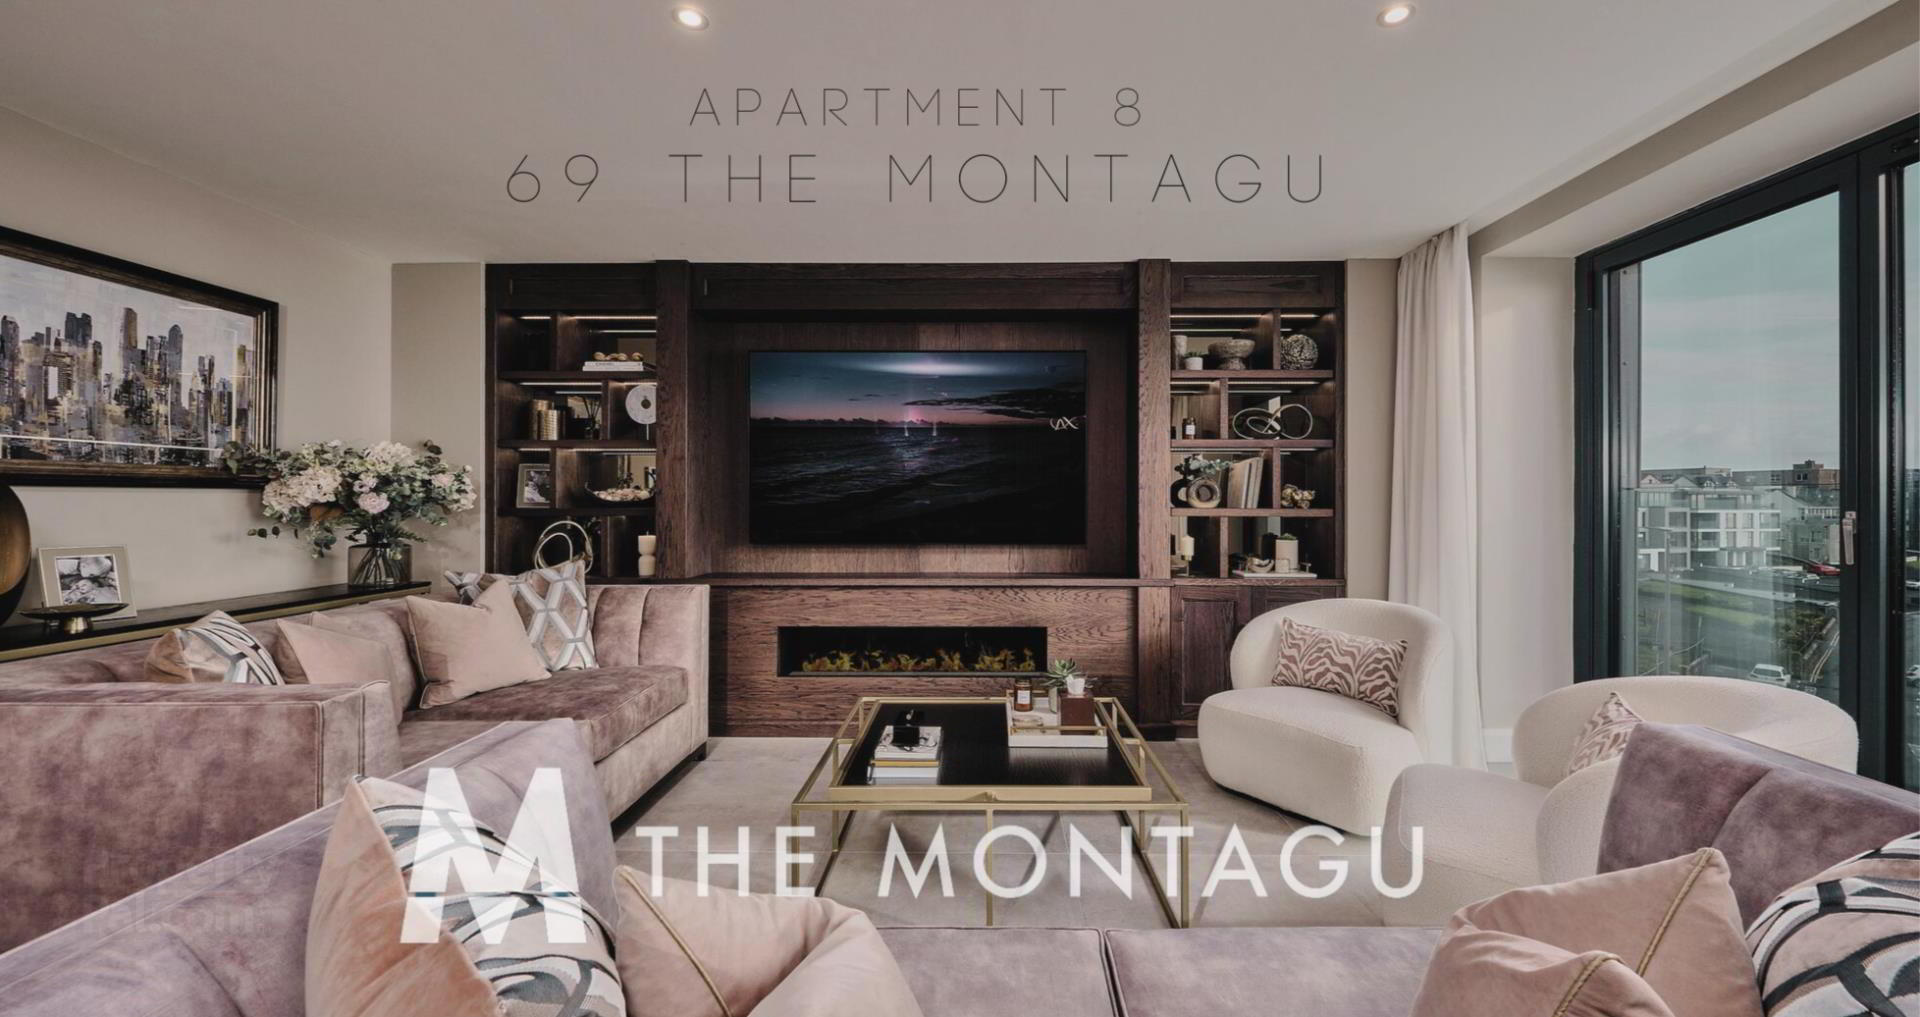 Apartment 8 69 The Montagu